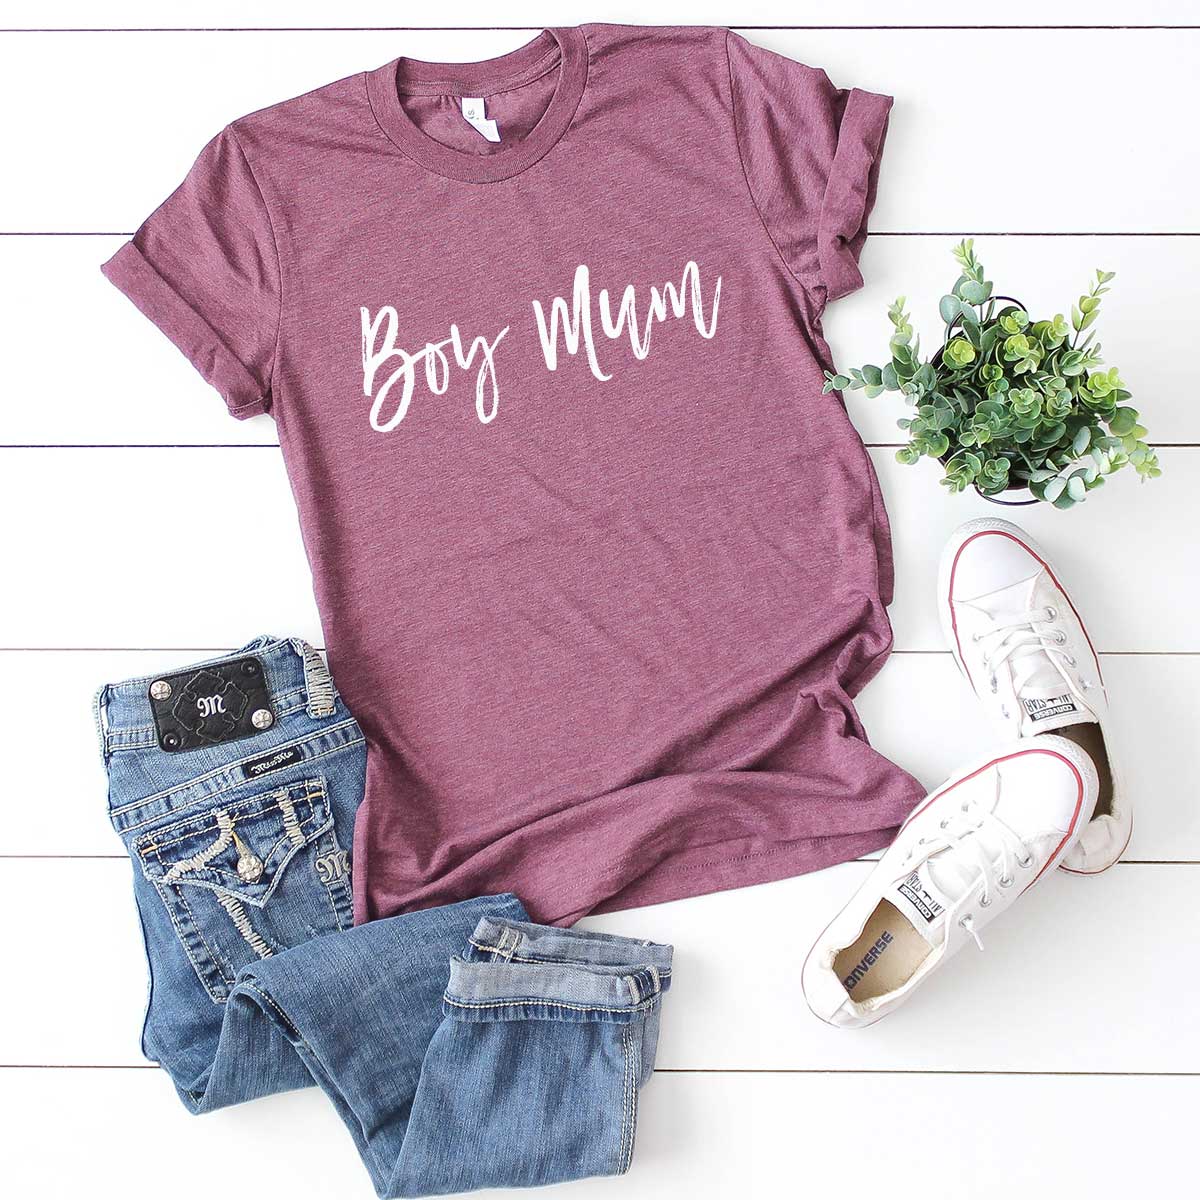 Boy Mum - Tri-Blend Maroon Casual T-Shirt